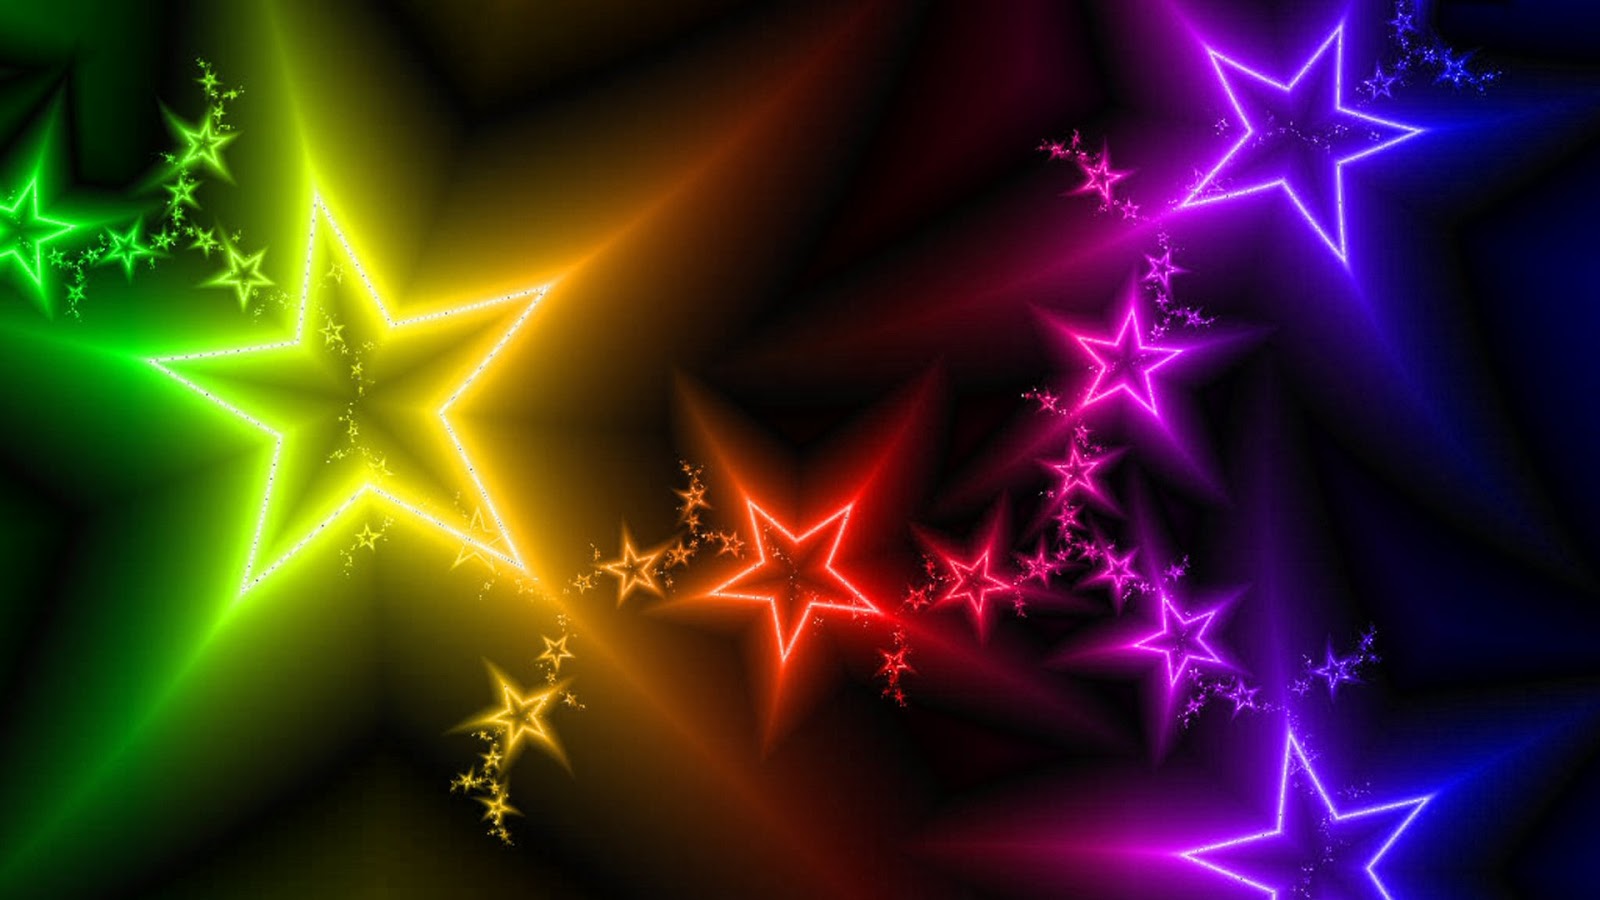 star wars fond d'écran en mouvement,art fractal,vert,néon,lumière,étoile